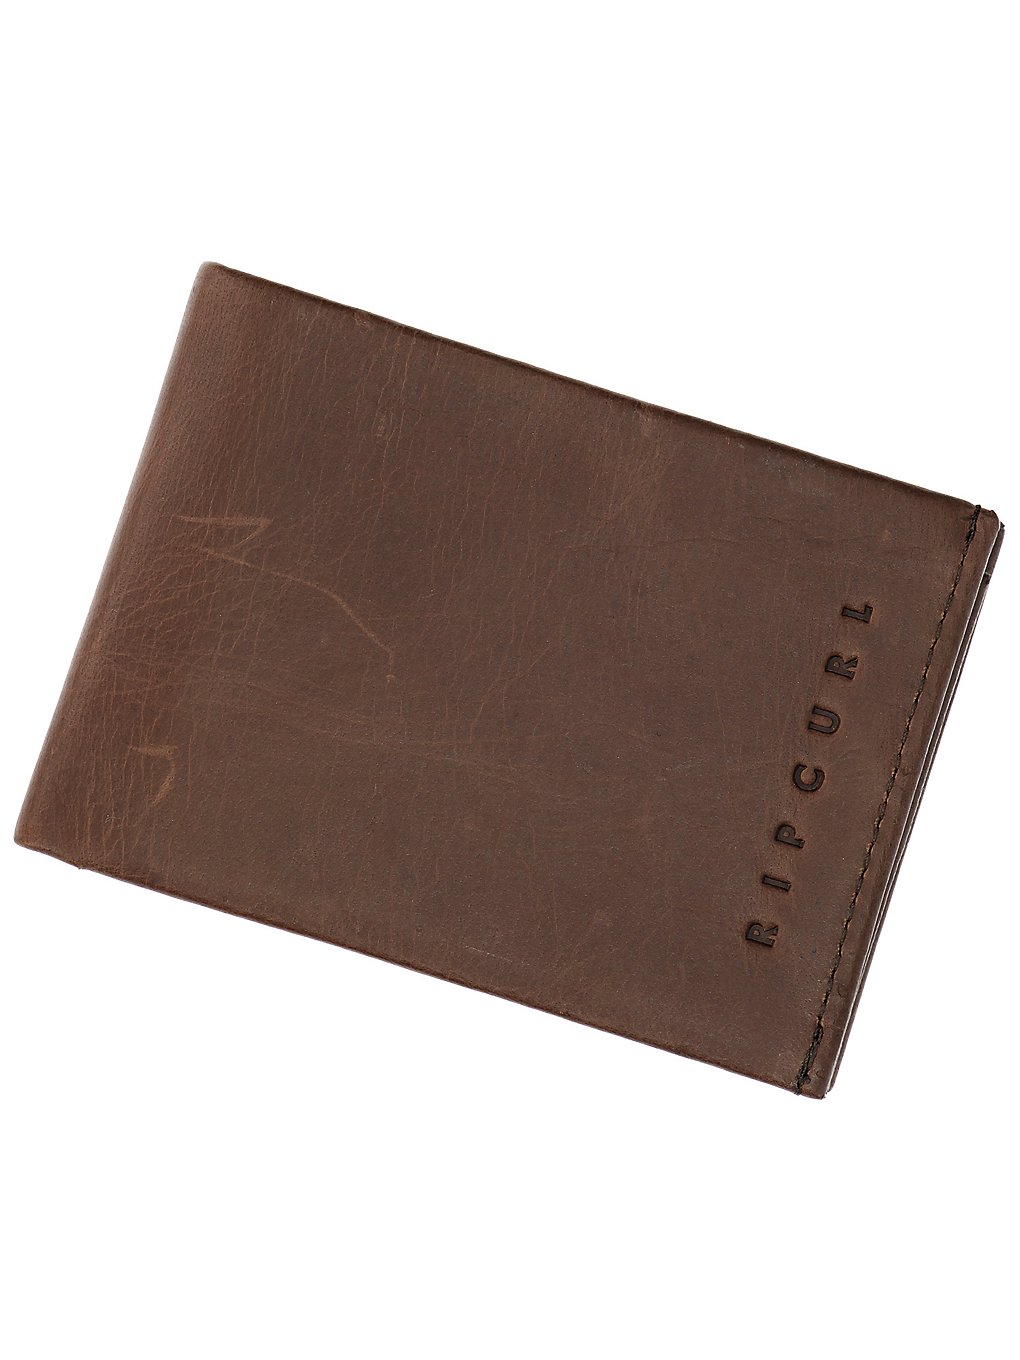 Rip Curl Vintage RFID Slim Wallet brown